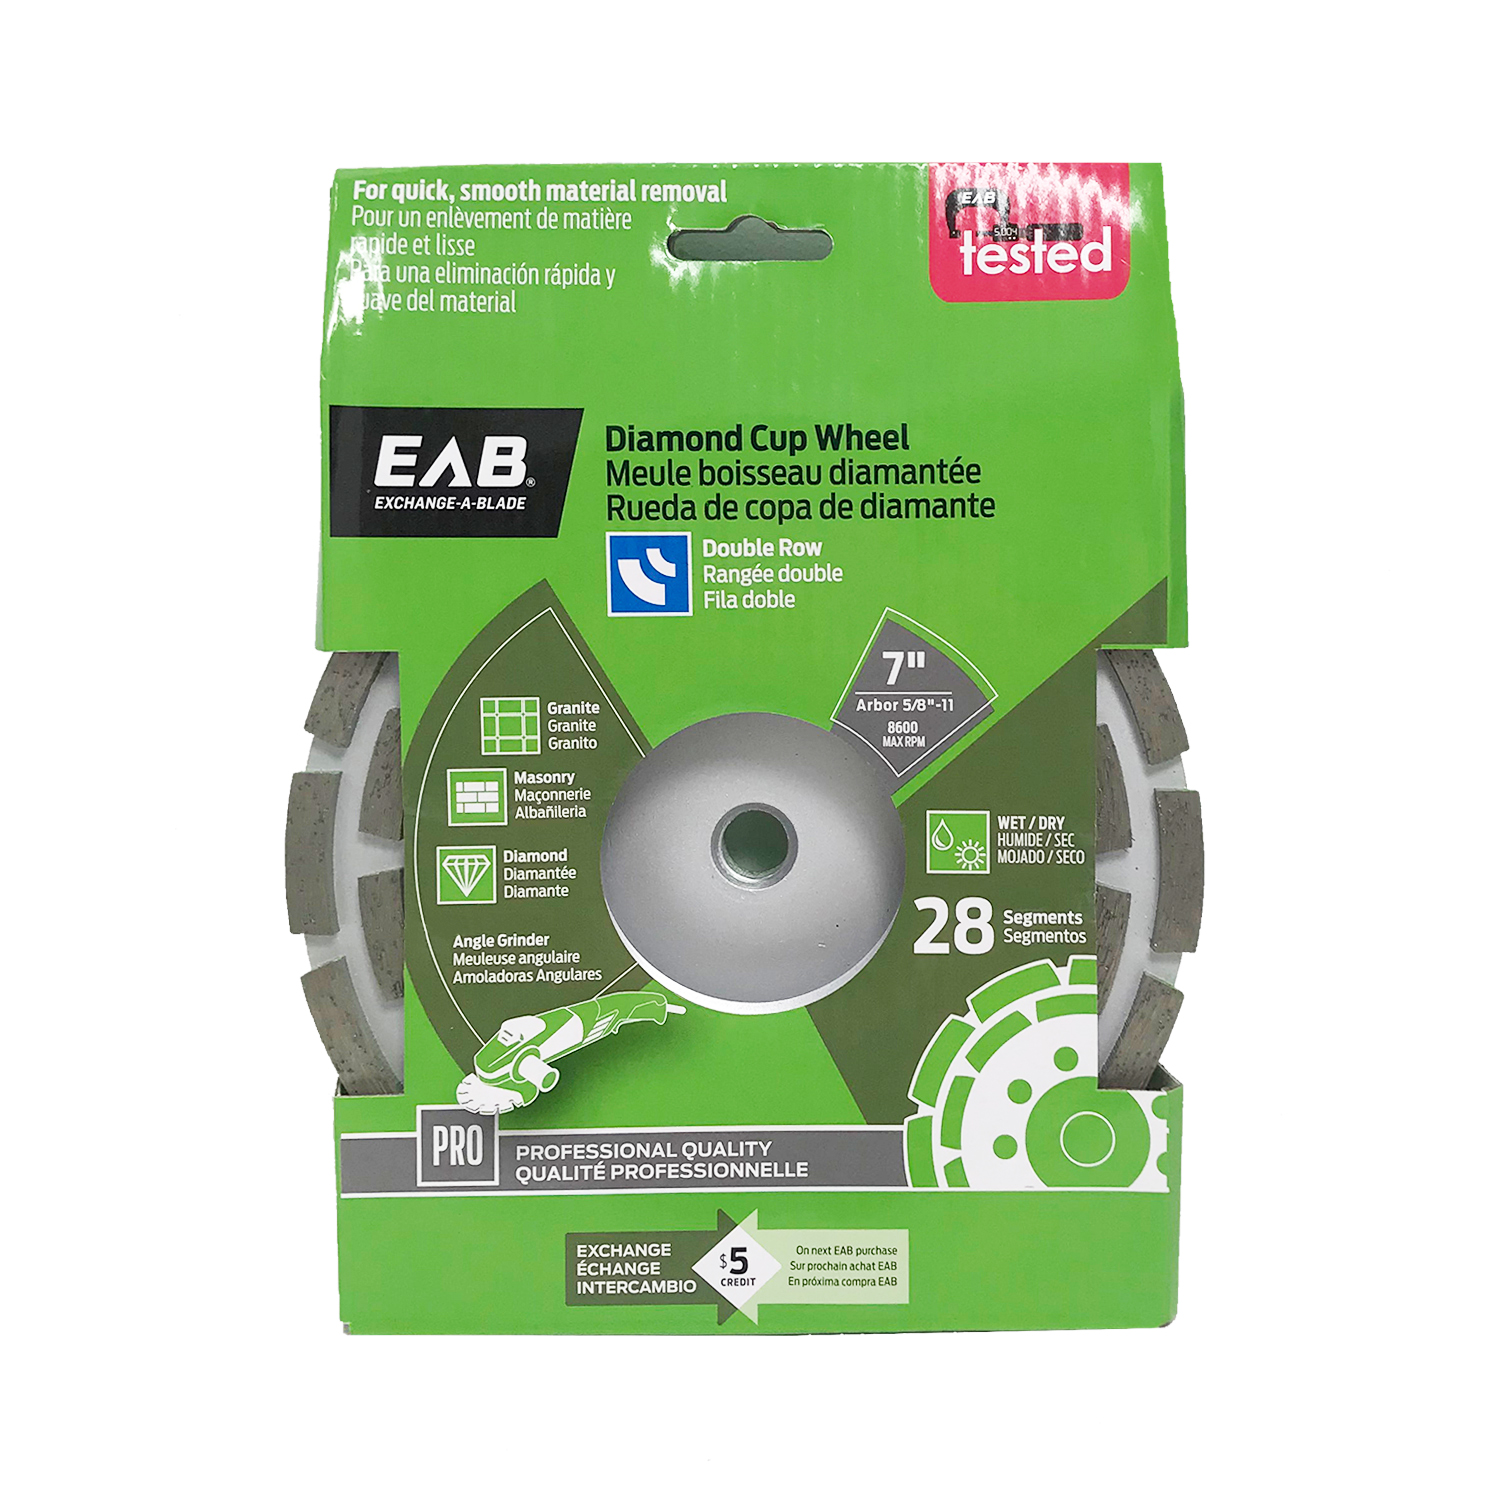 EAB (3110562) packaging